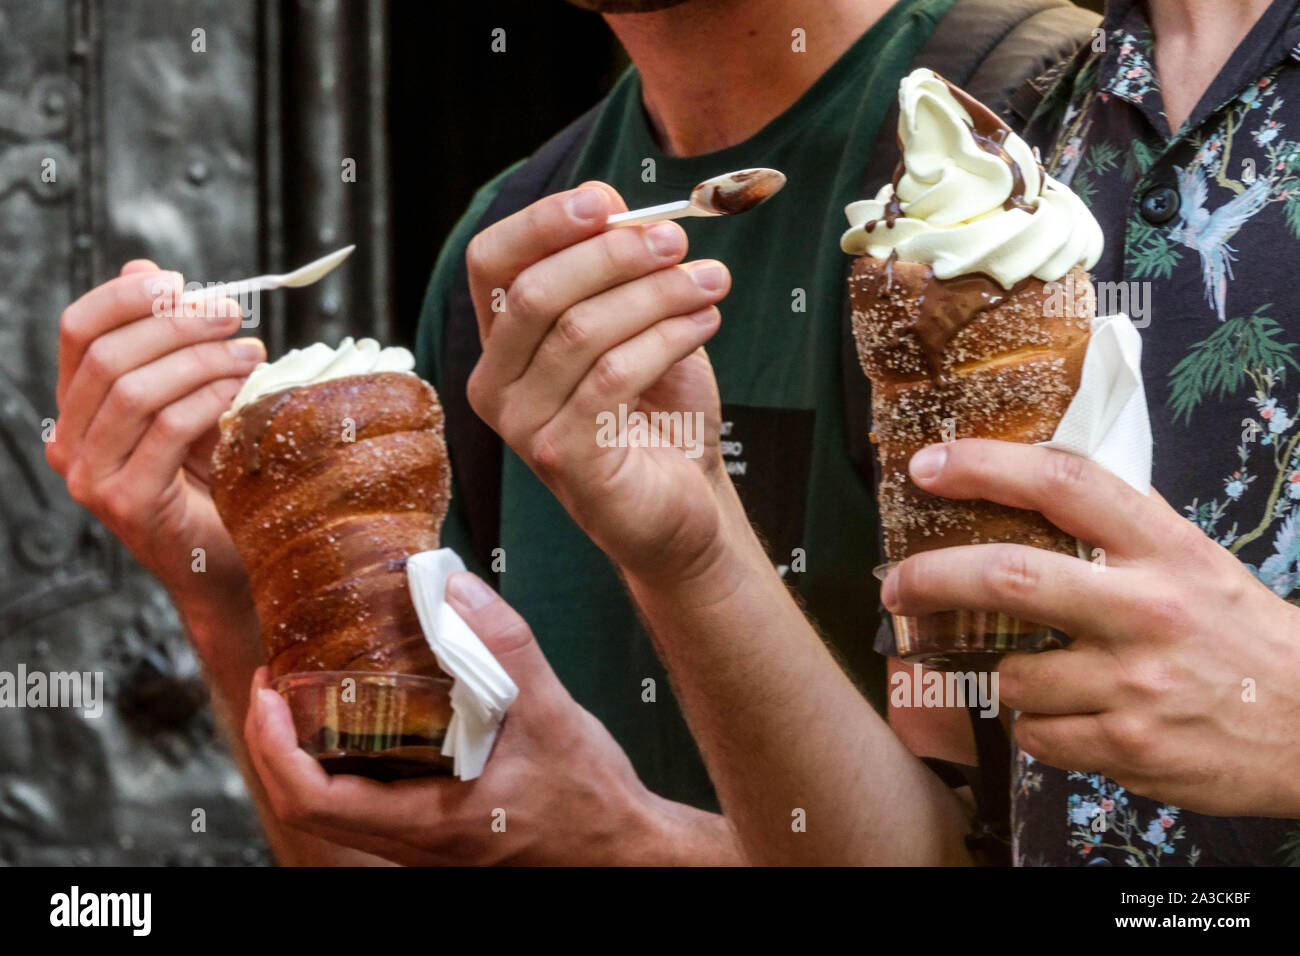 Trdelnik Praga comida, helado Personas comer pastel República Checa Foto de stock